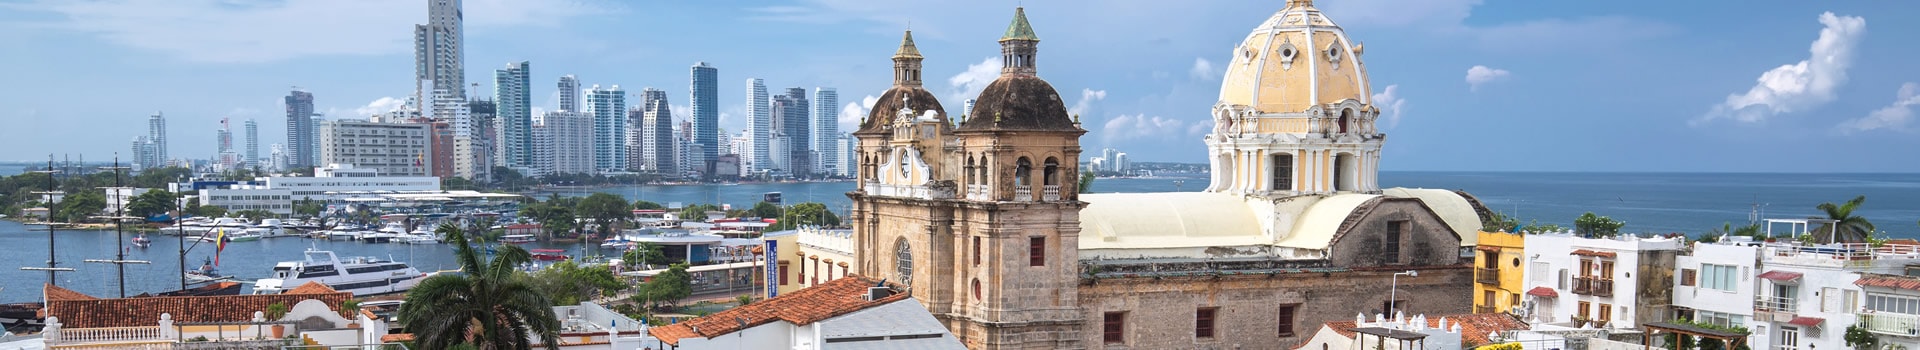 Valencia - Cartagena de indias